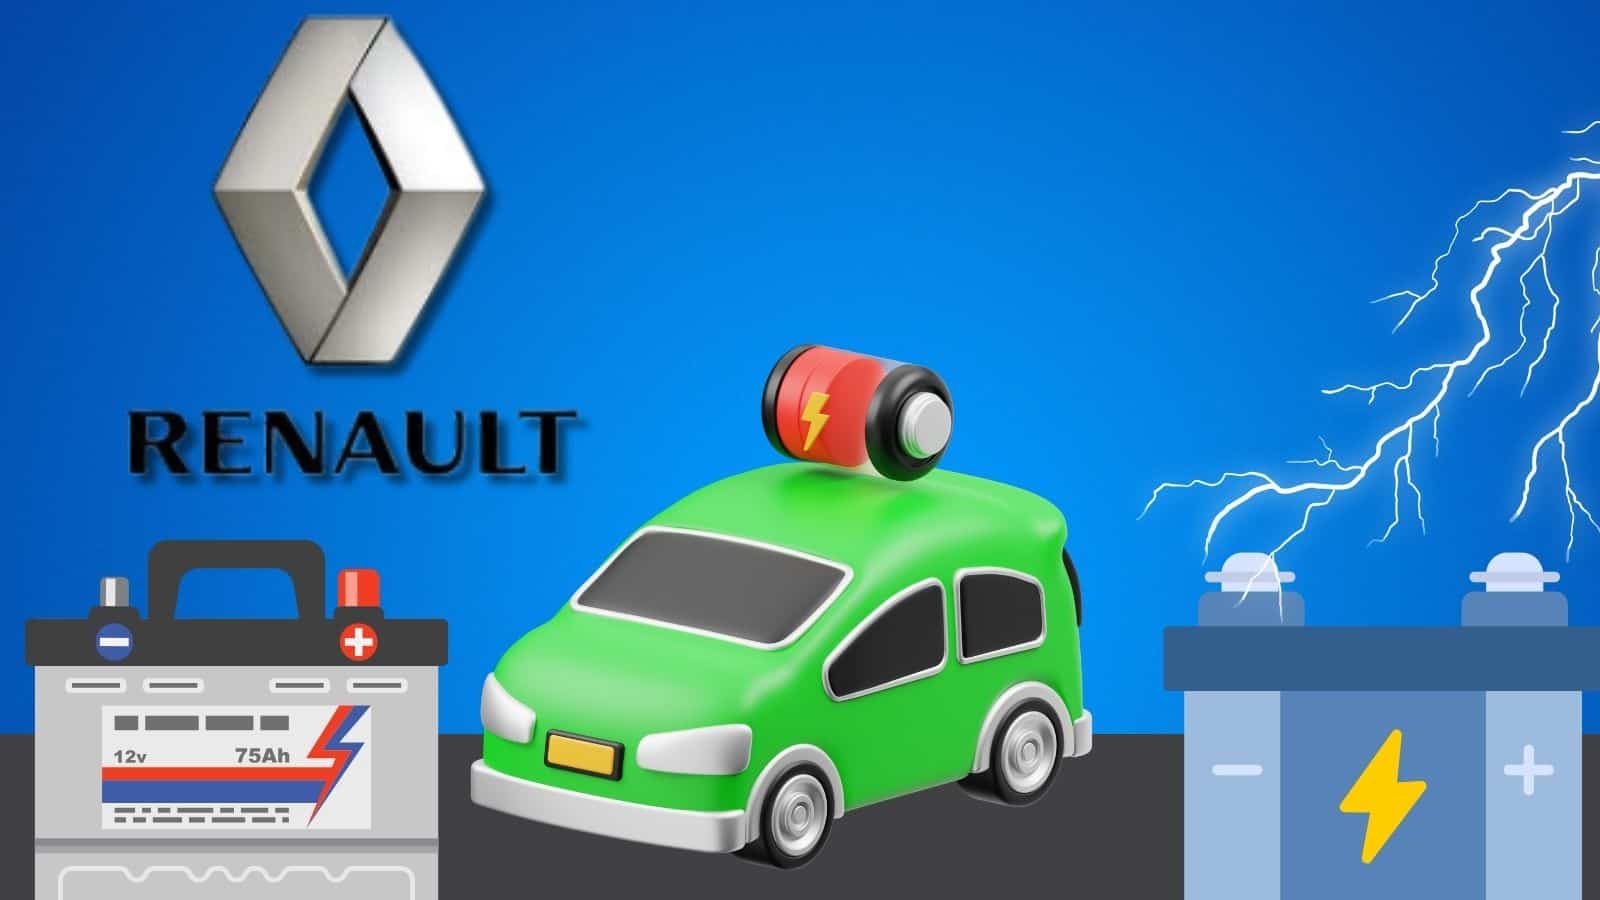 Renault: batterie LFP per diminuire i costi delle auto elettriche